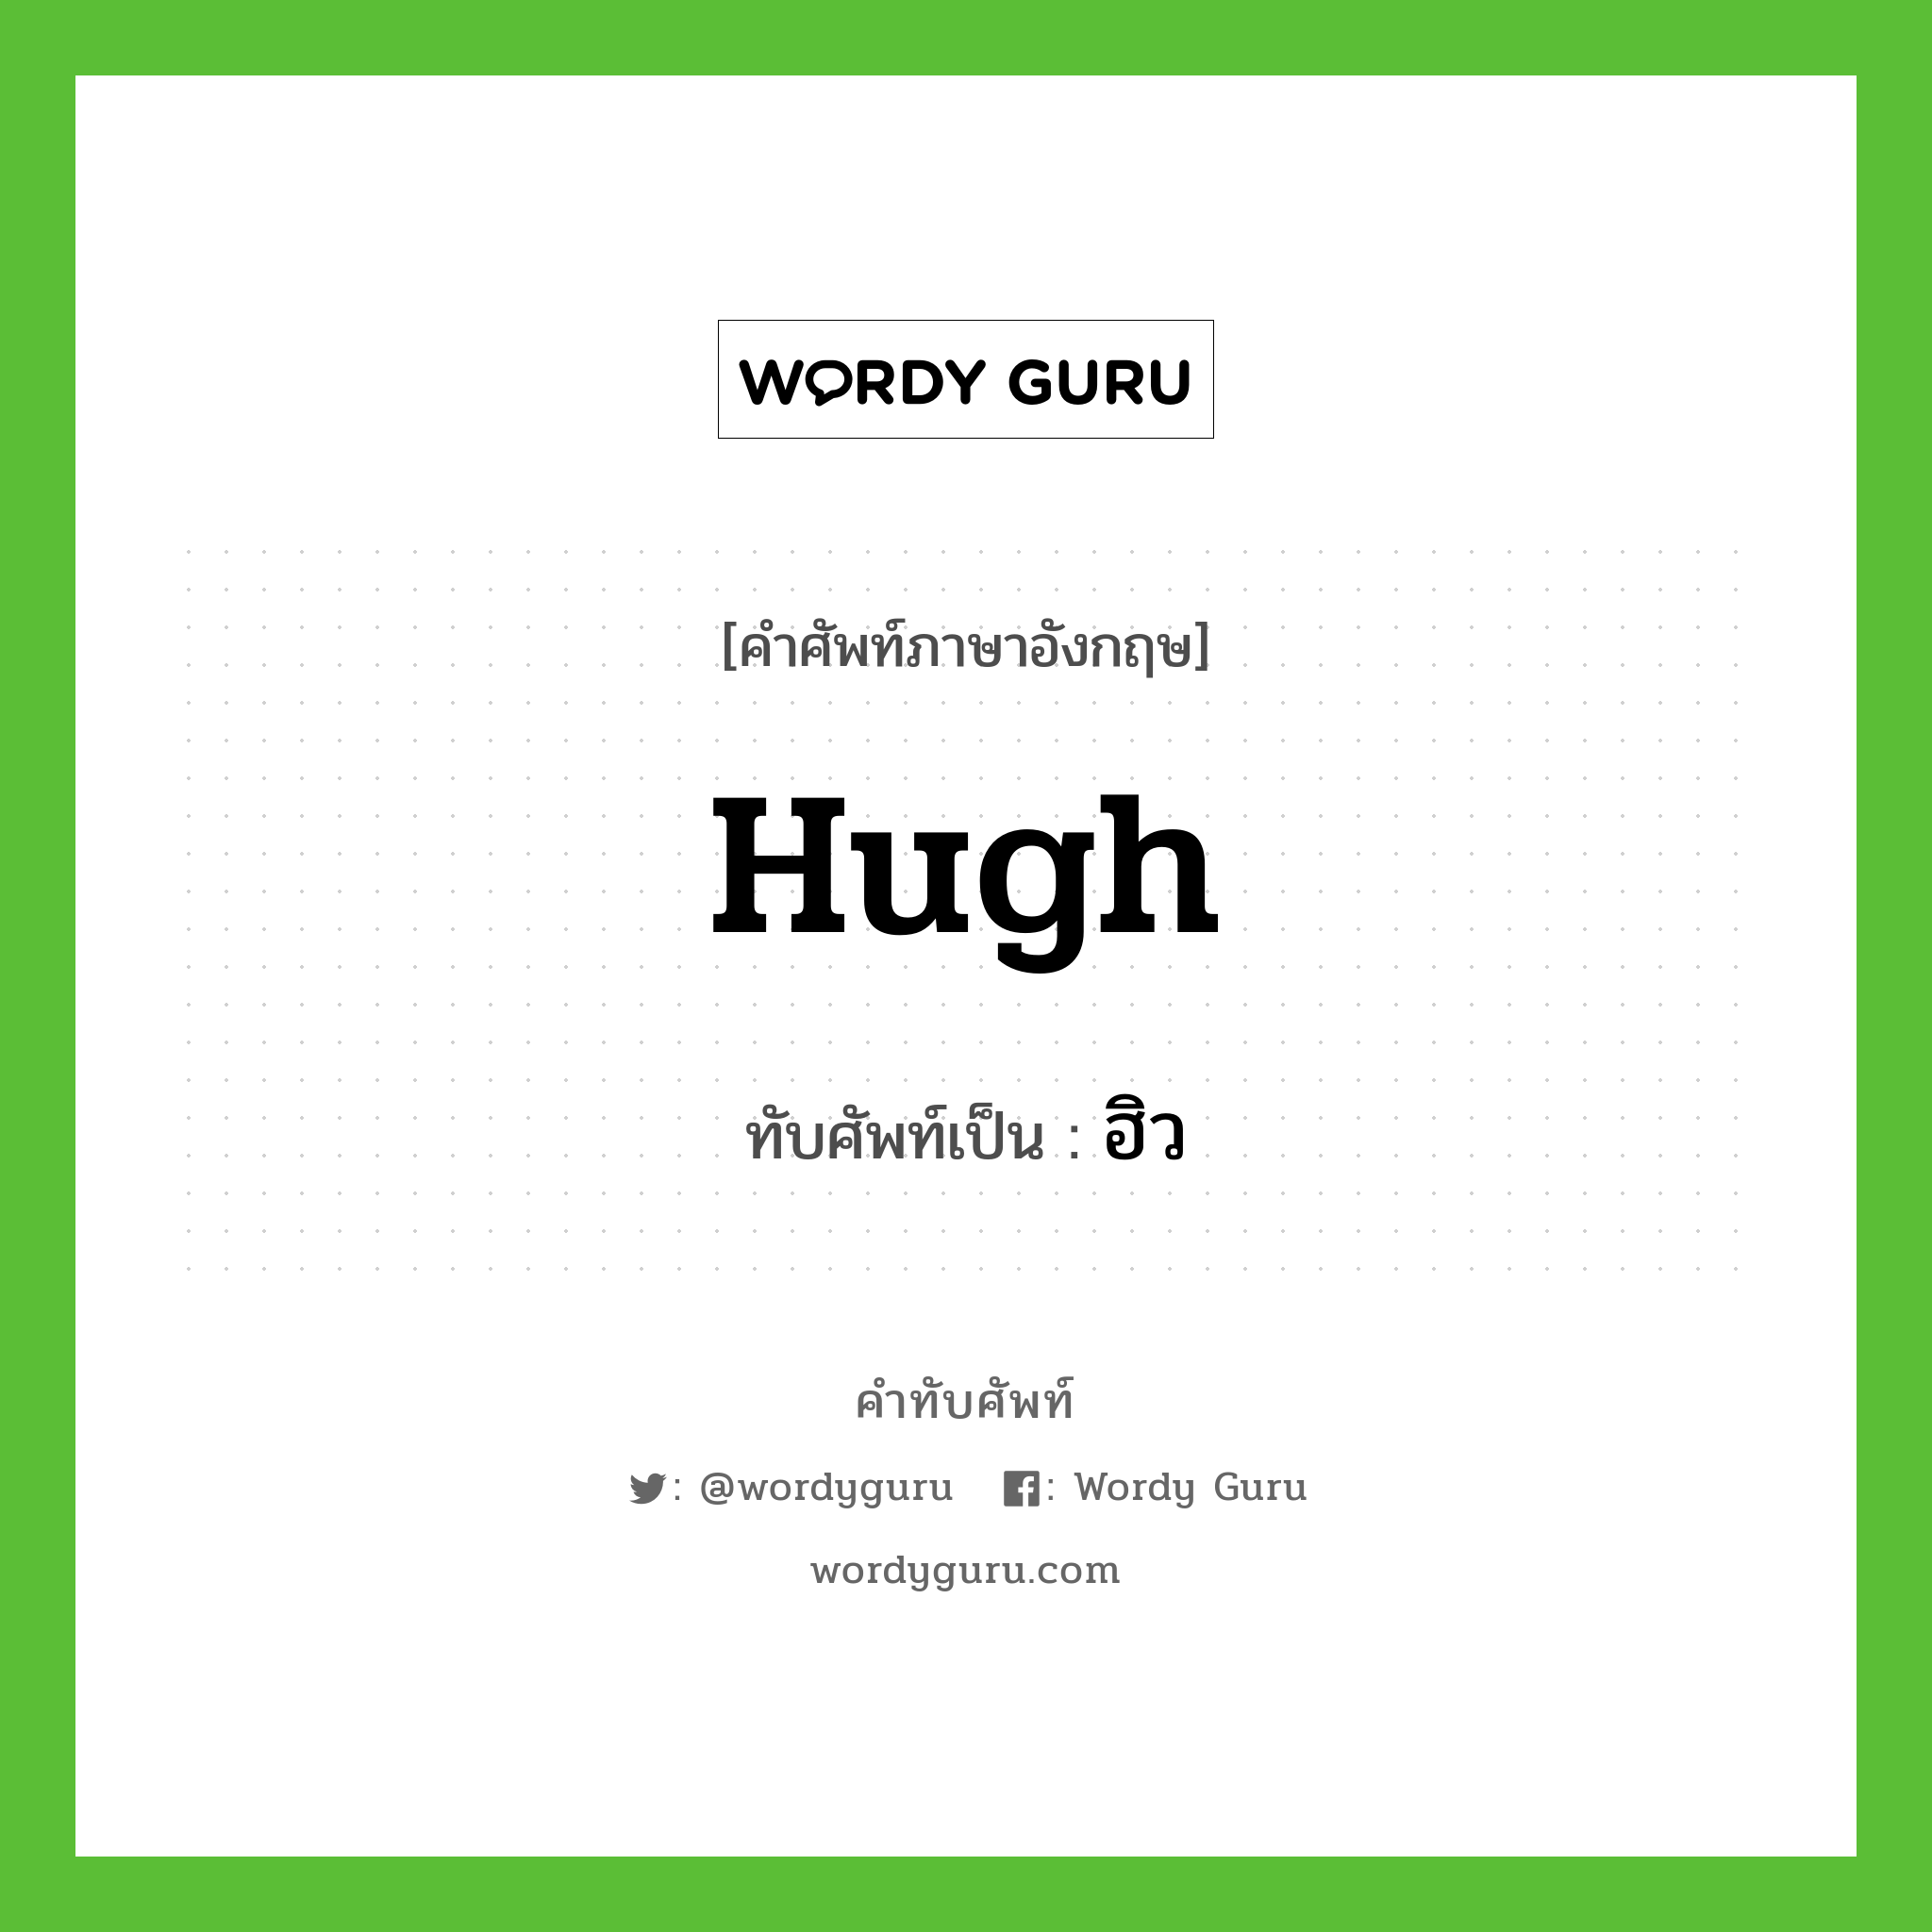 Hugh เขียนเป็นคำไทยว่าอะไร?, คำศัพท์ภาษาอังกฤษ Hugh ทับศัพท์เป็น ฮิว